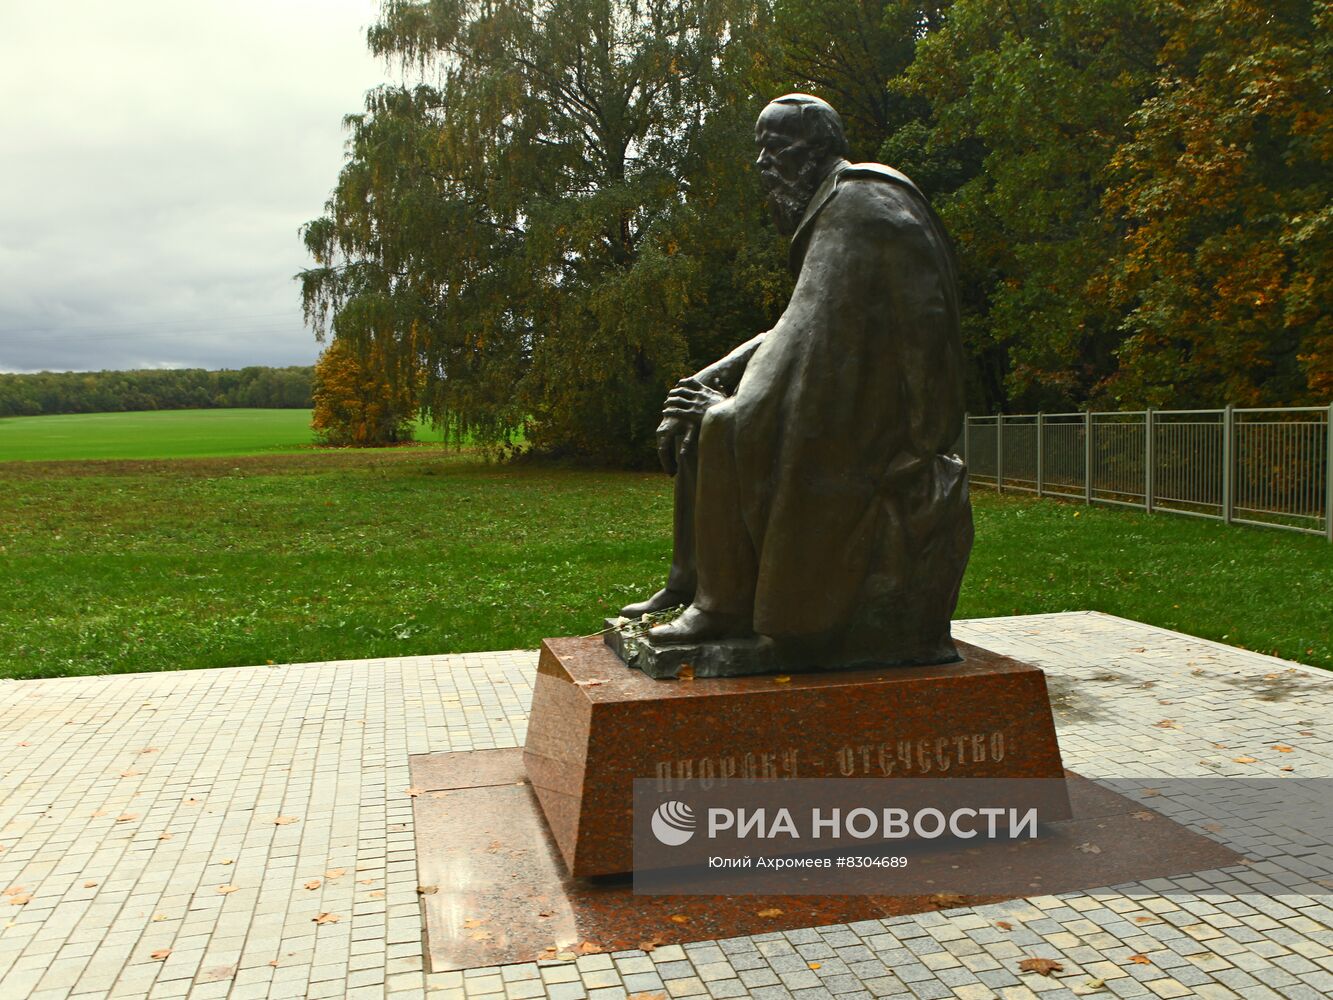 Памятник писателю Ф.Достоевскому в Зарайске